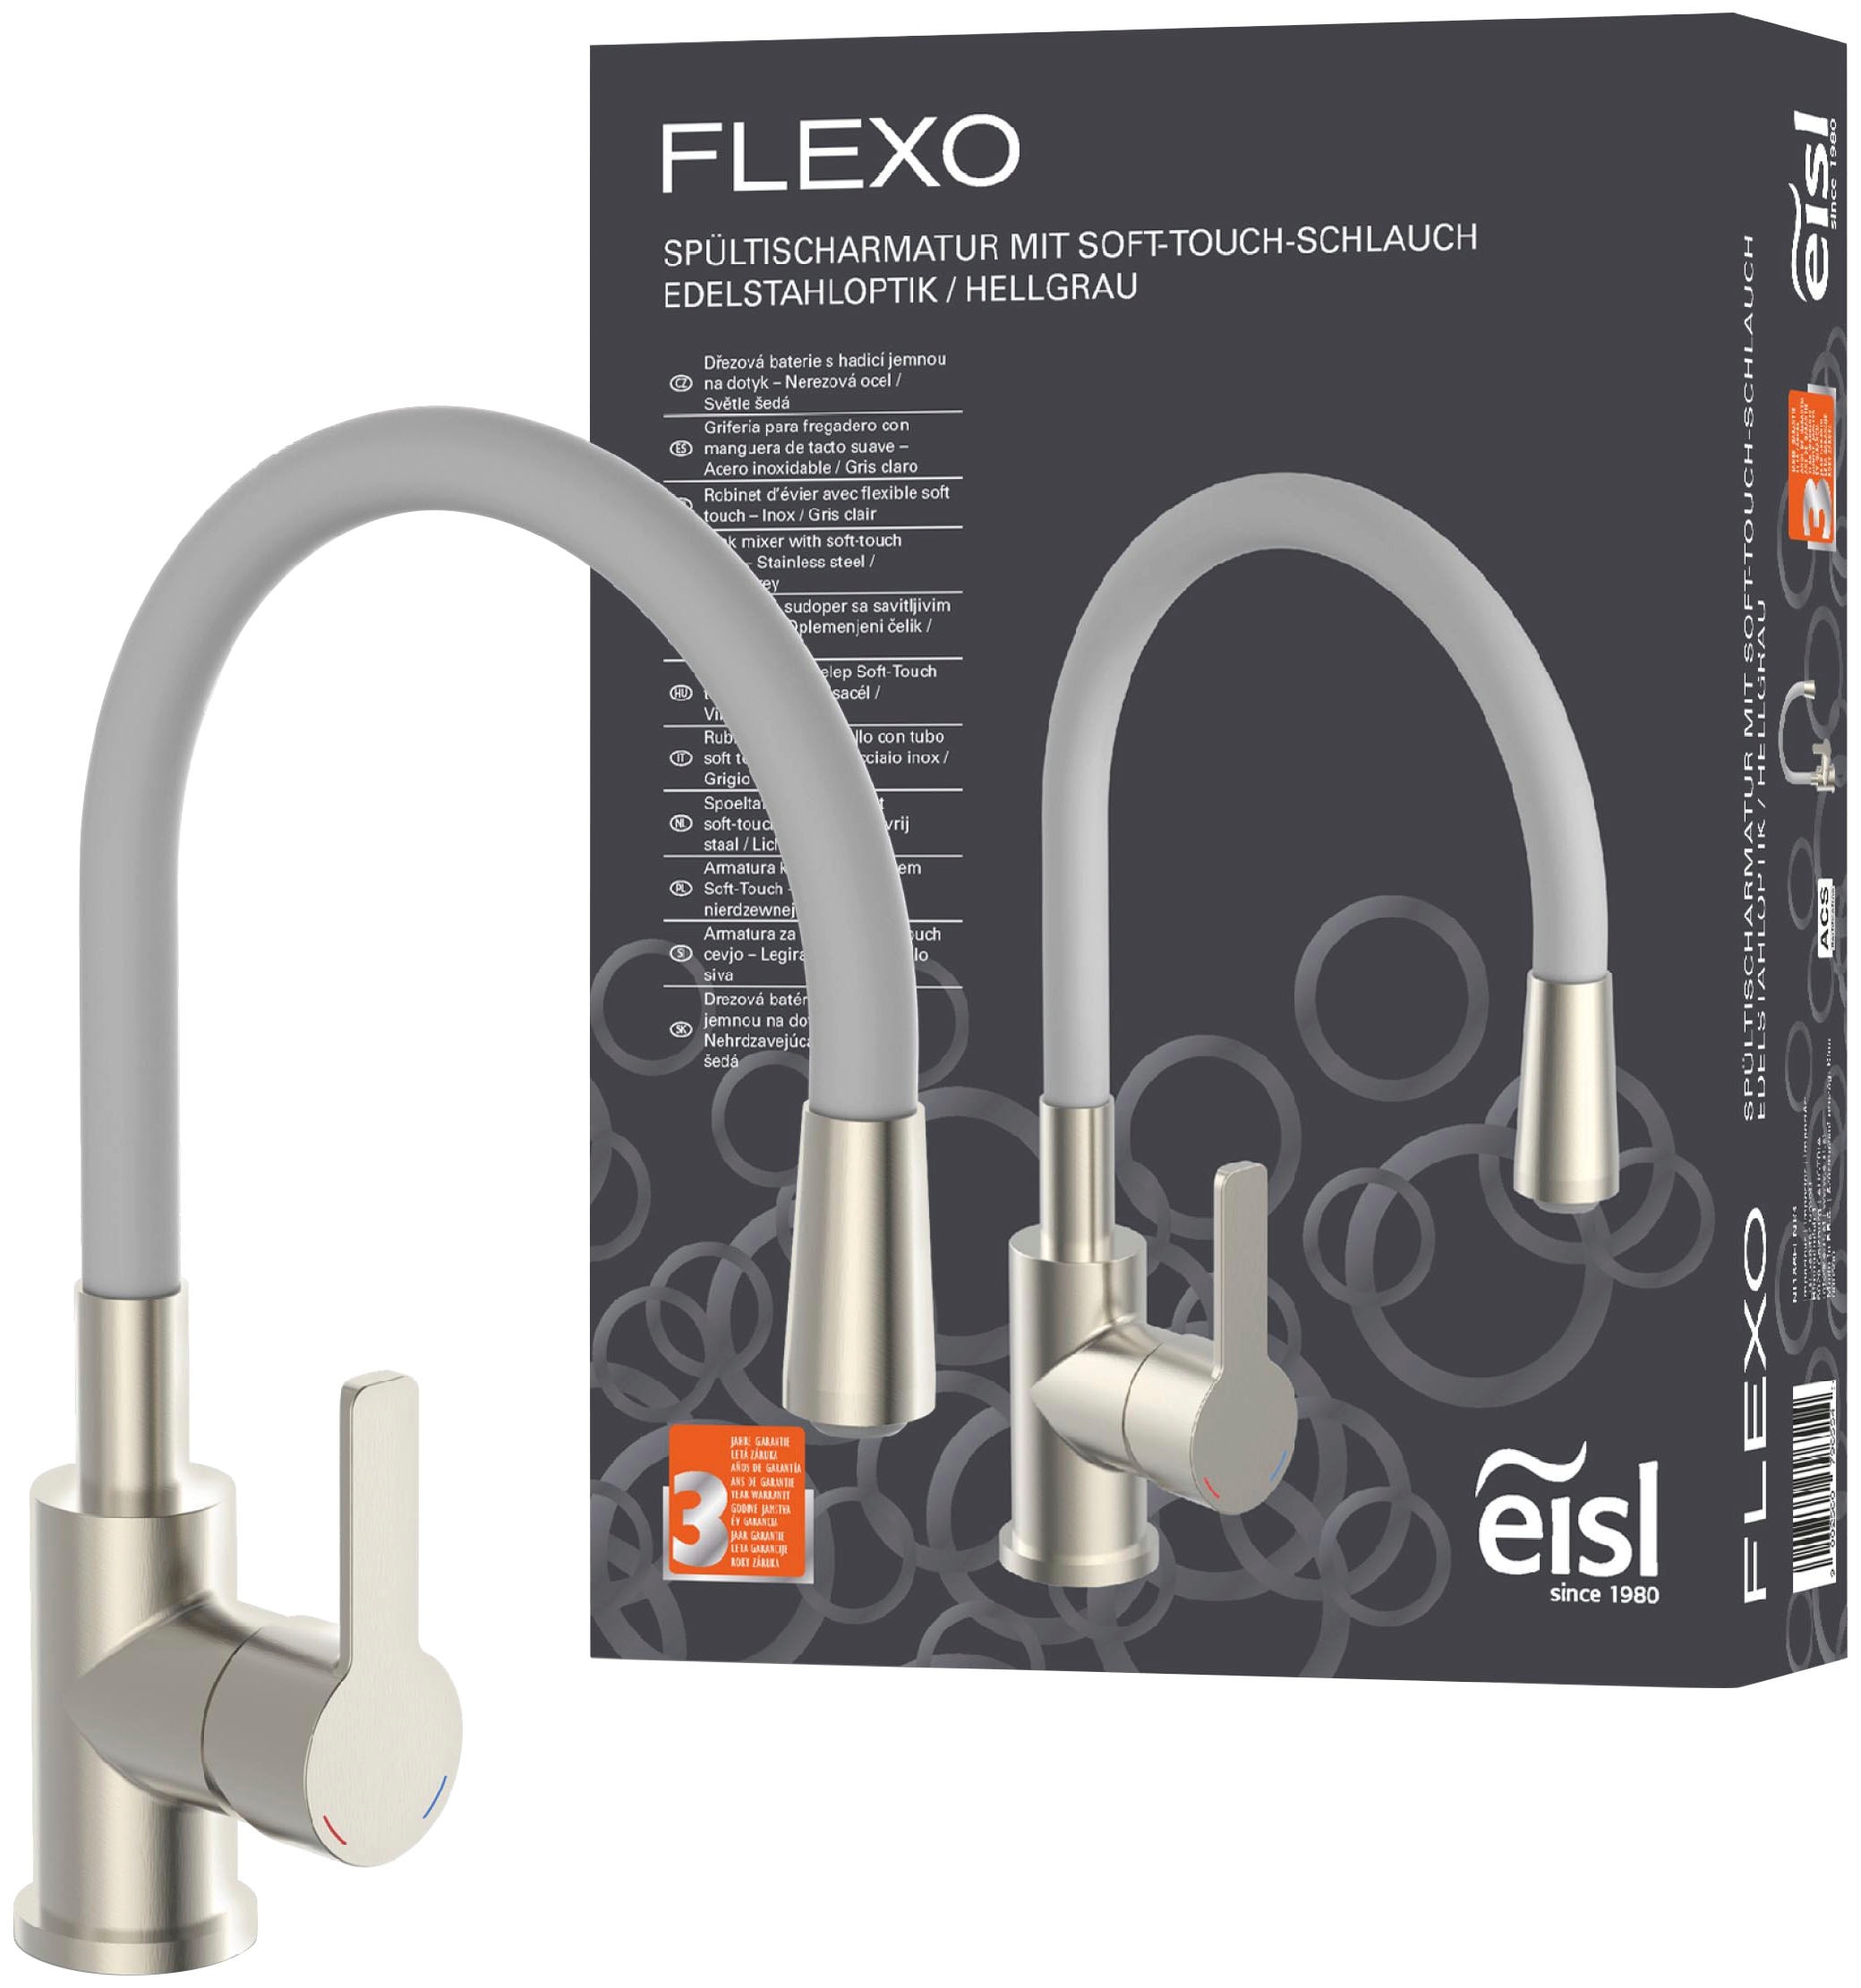 Eisl Spültischarmatur »Flexo«, energiesparender Cold-Start, wassersparender Eco-Click,360° schwenkbar